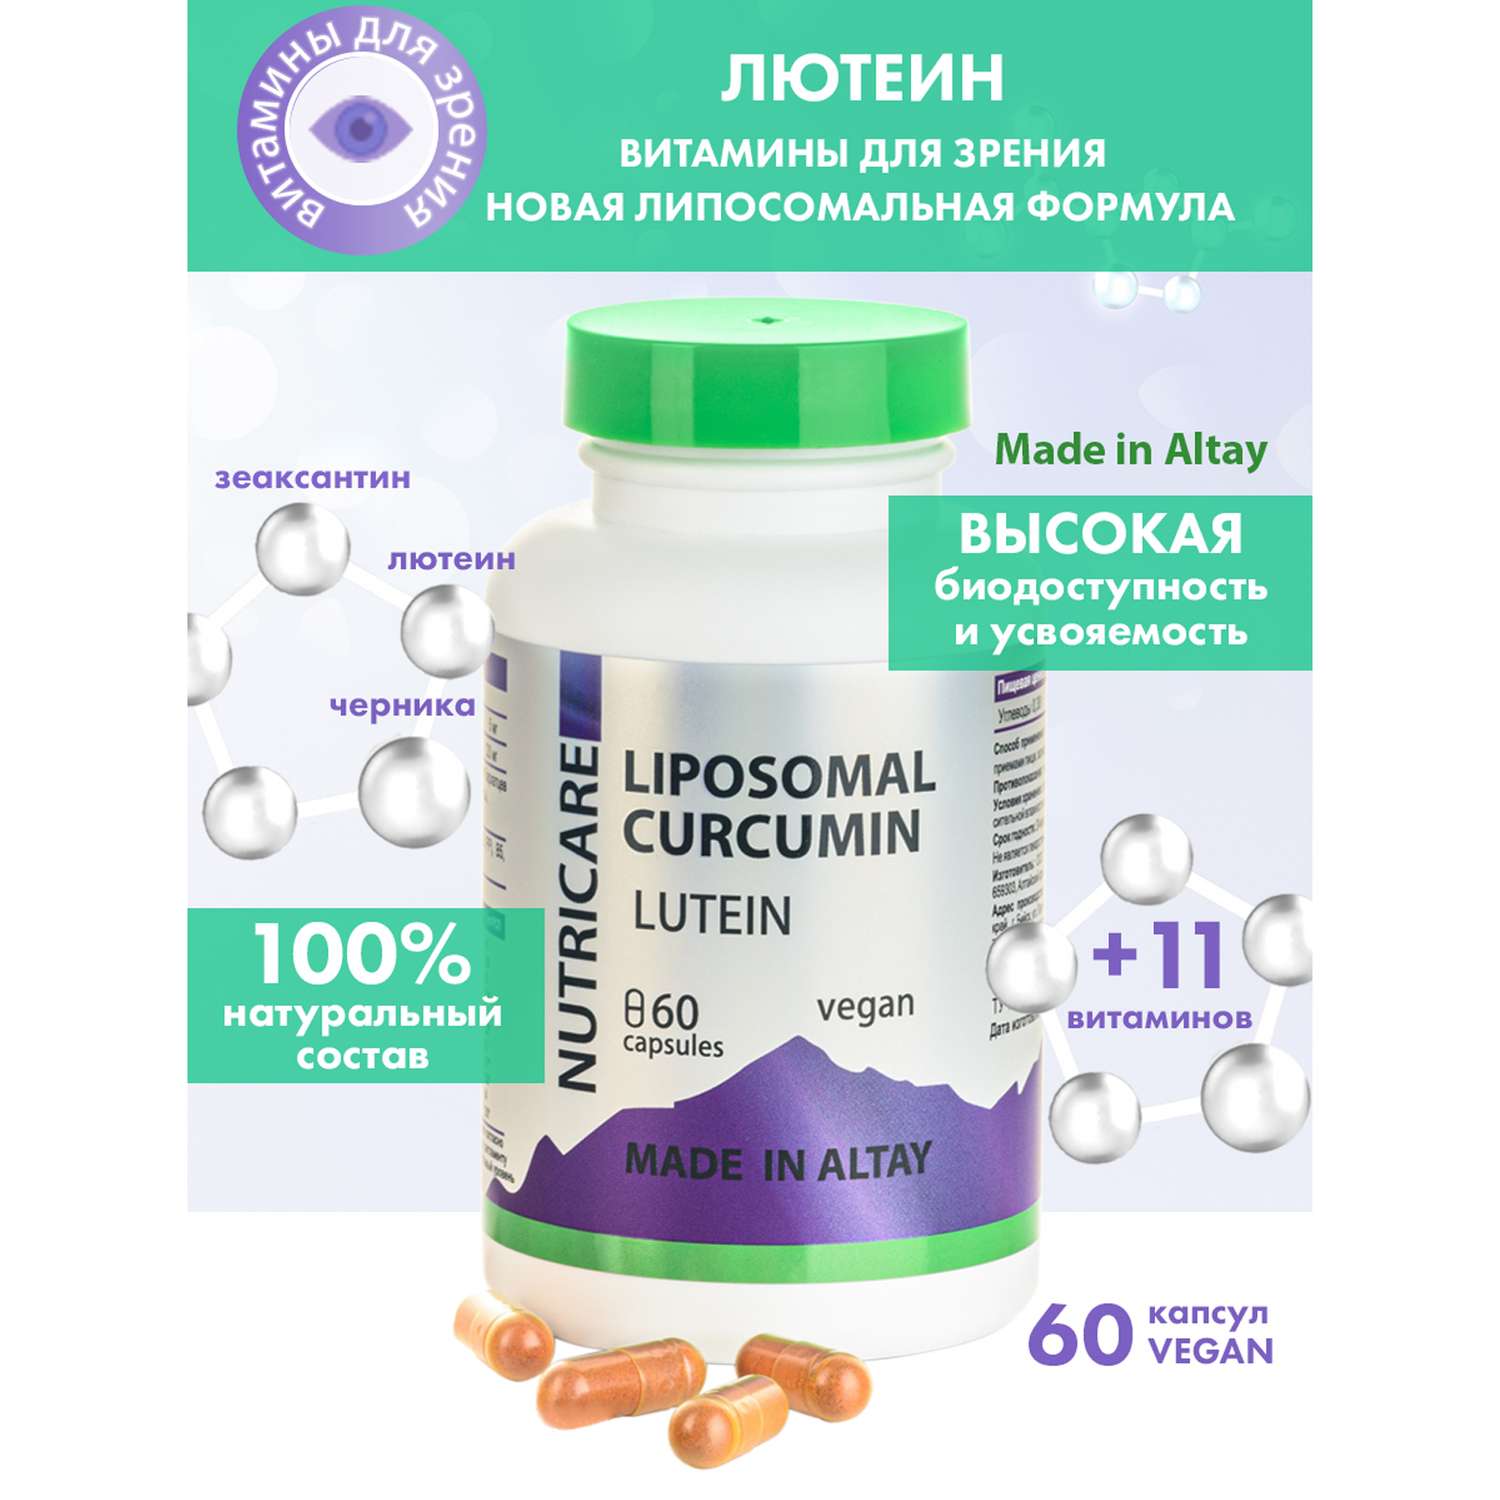 Концетраты пищевые Алтайские традиции Липосомальный куркумин Витамины для зрения веган 60 капсул - фото 2